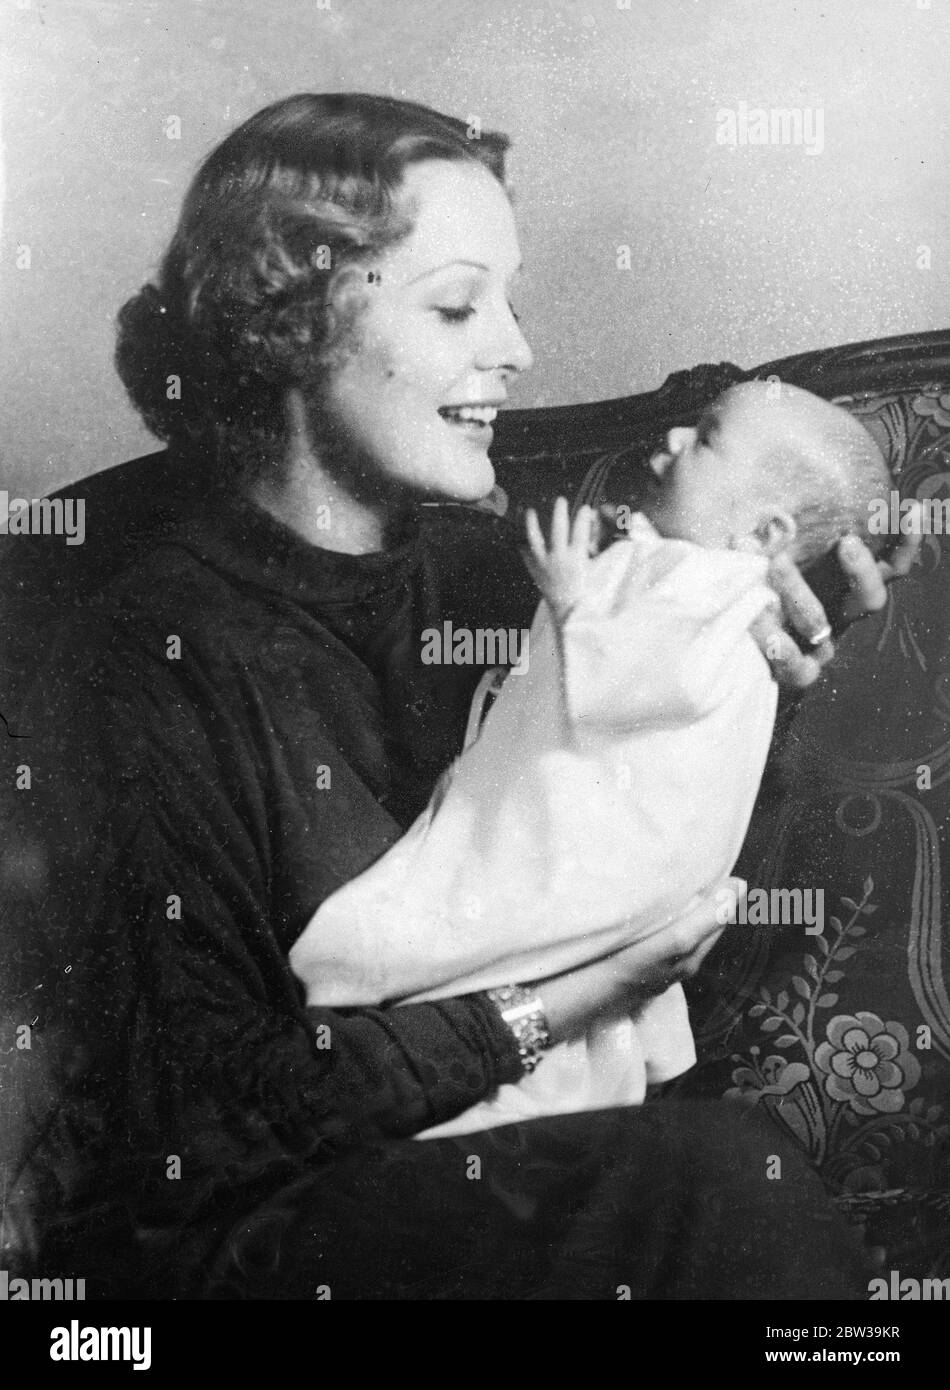 Erstes Bild von Gloria Stuart mit ihrem Baby. Dieses charmante Studie ist das erste Bild von Sylvia Vaugan Shackman, Baby Tochter von Gloria Stuart, die bekannte amerikanische Filmschauspielerin, mit ihrer Mutter in ihrem Hollywood-Haus. 22 Juli 1935 Stockfoto